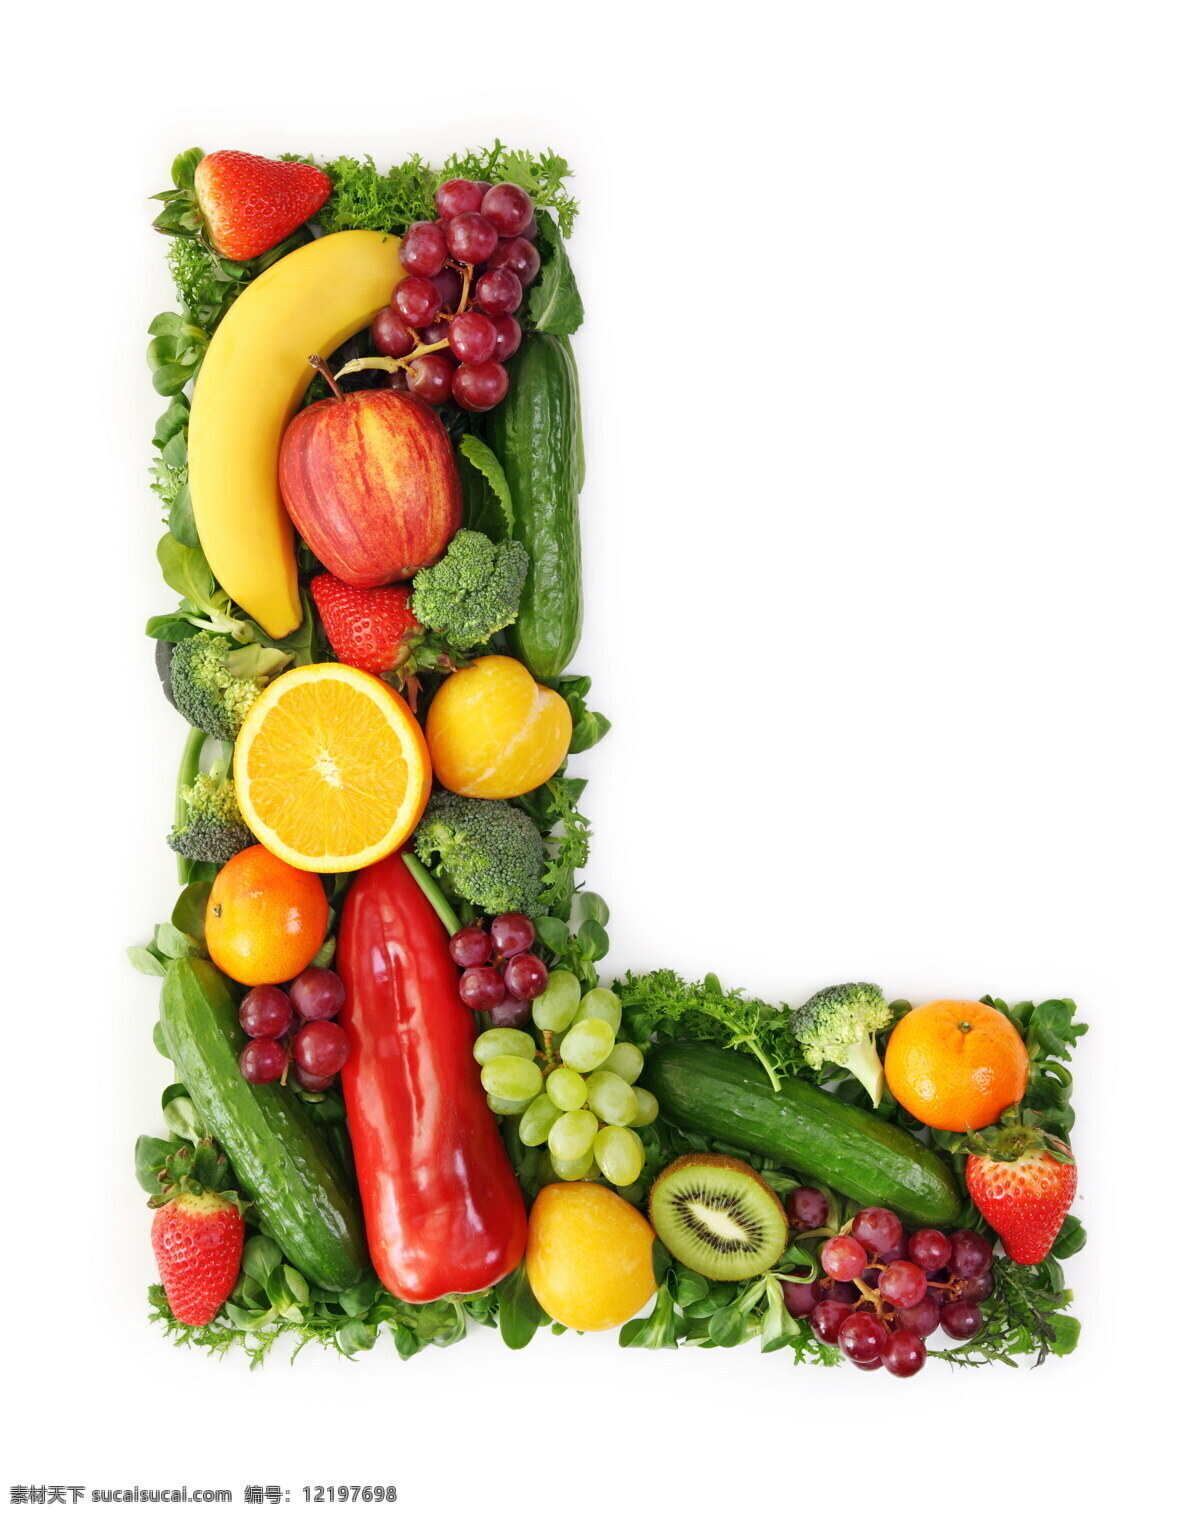 蔬菜水果 组成 字母 l 辣椒 葡萄 黄瓜 橙子 香蕉 蔬菜 水果 食物 水果图片 餐饮美食